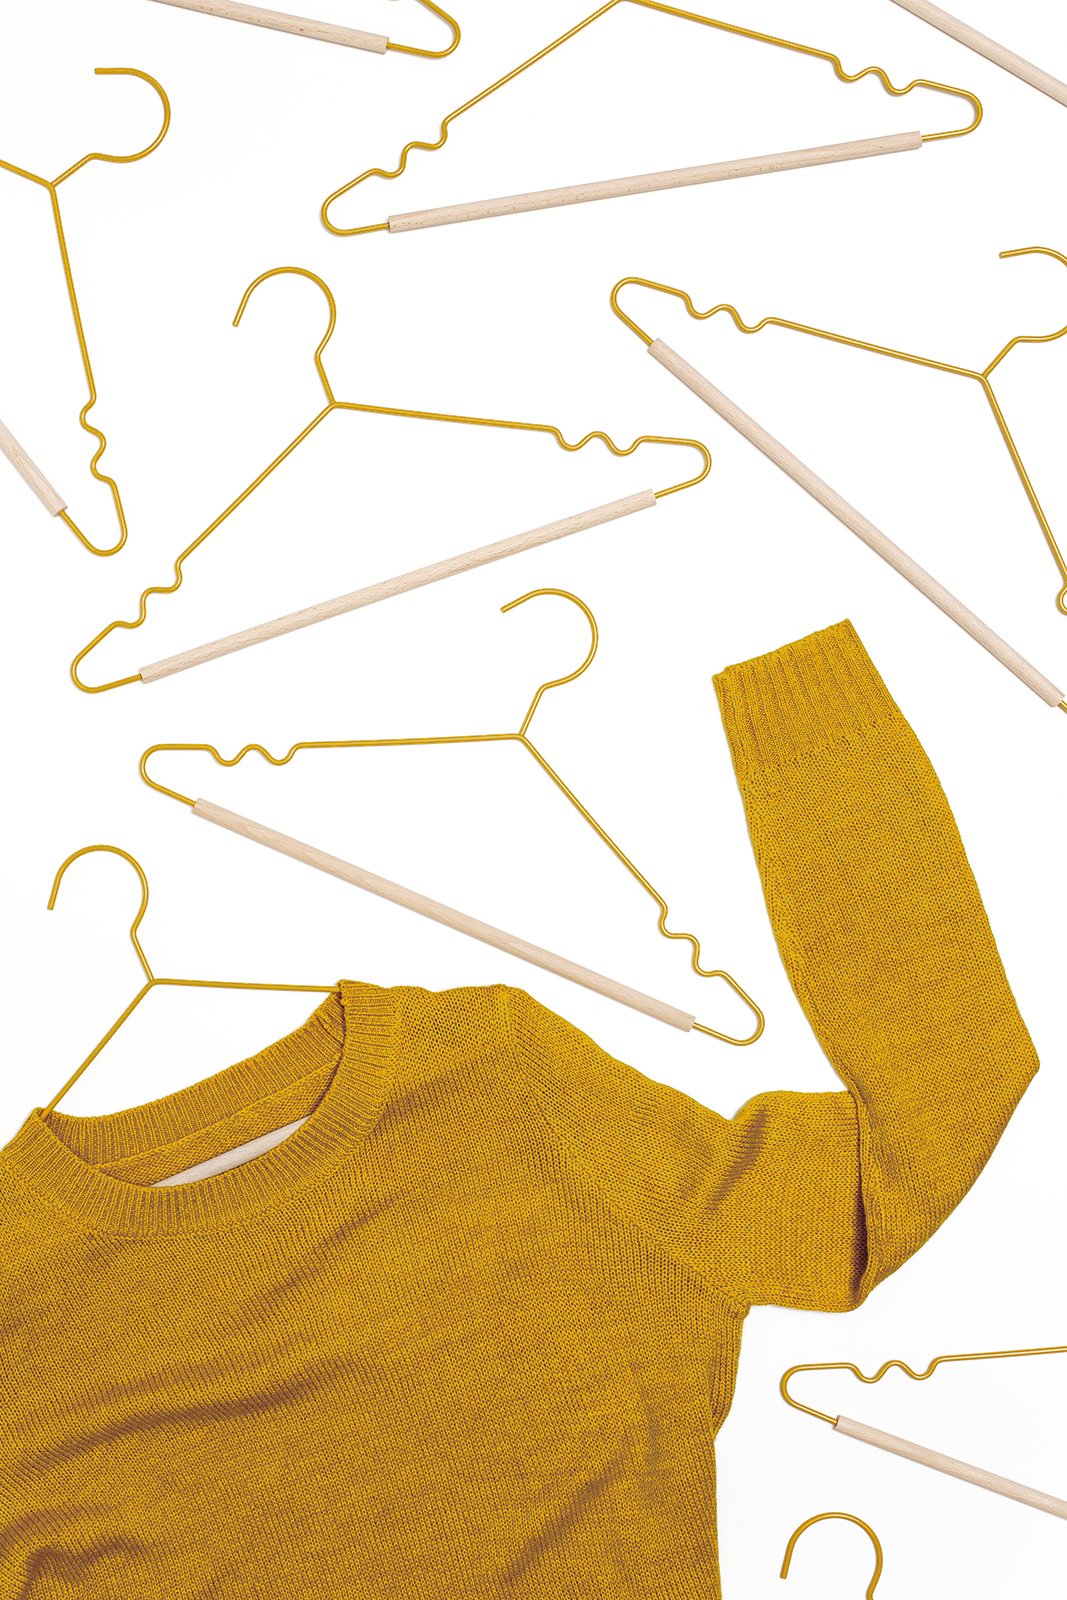 Mustard Made Hangers in Summer - Kids Metal Clothes Hangers